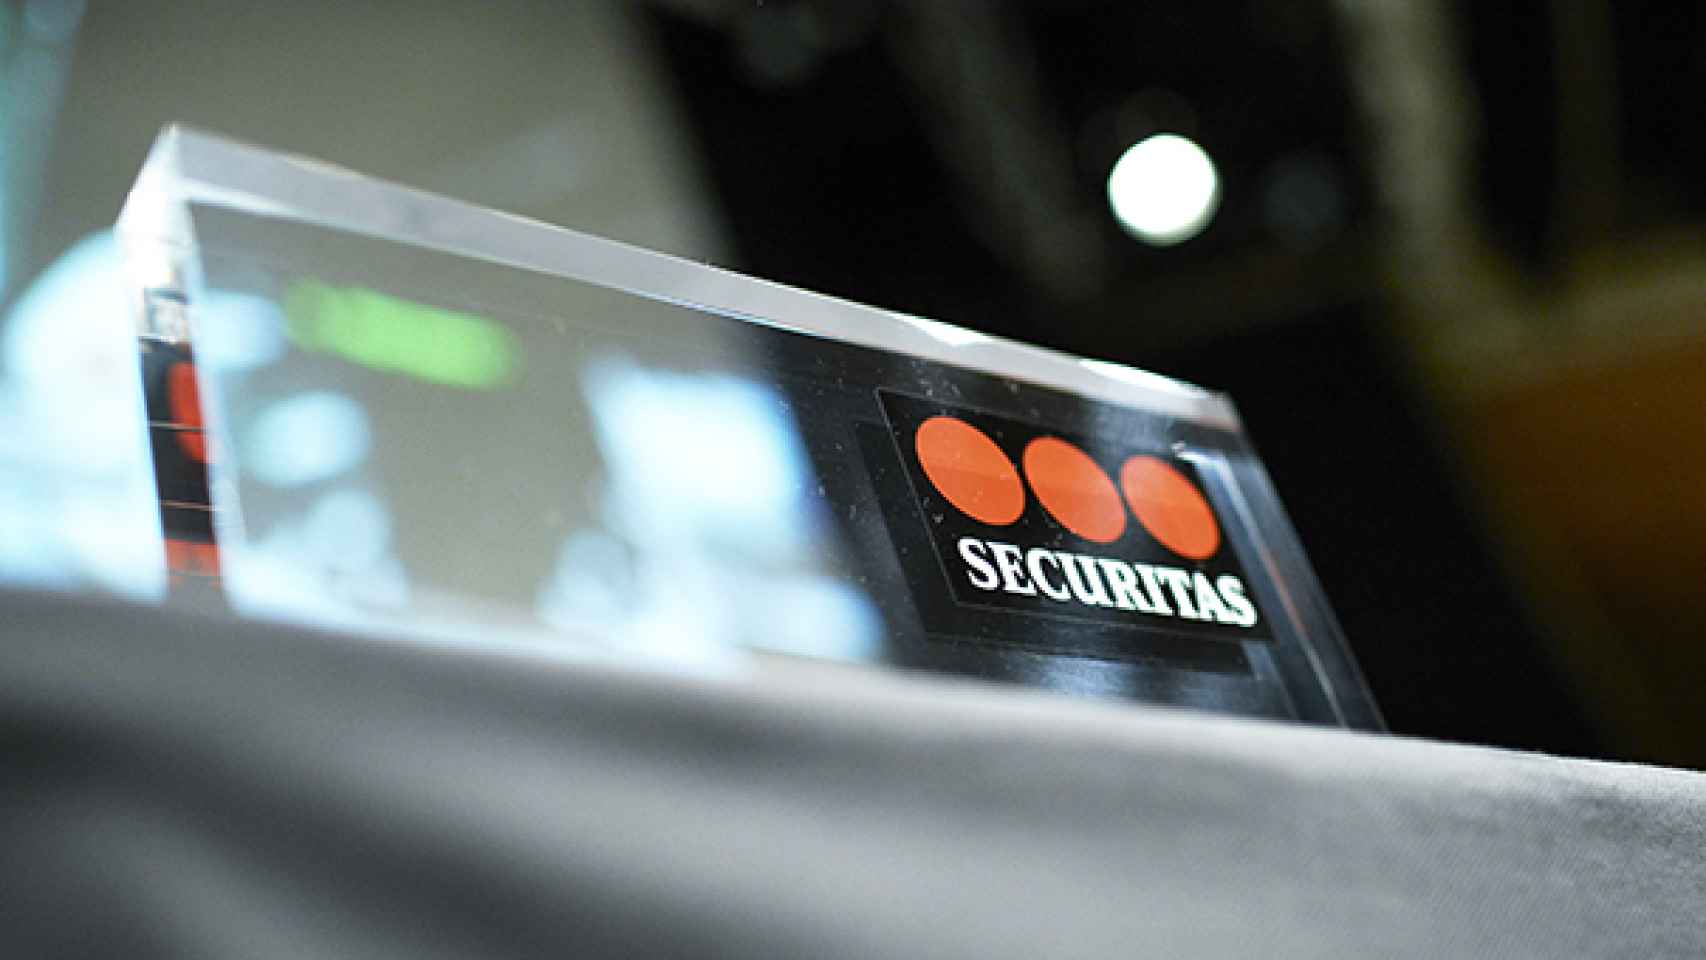 El pasado 19 de agosto, Bloomberg registró una compra excepcional de 10,774 millones de títulos de Securitas